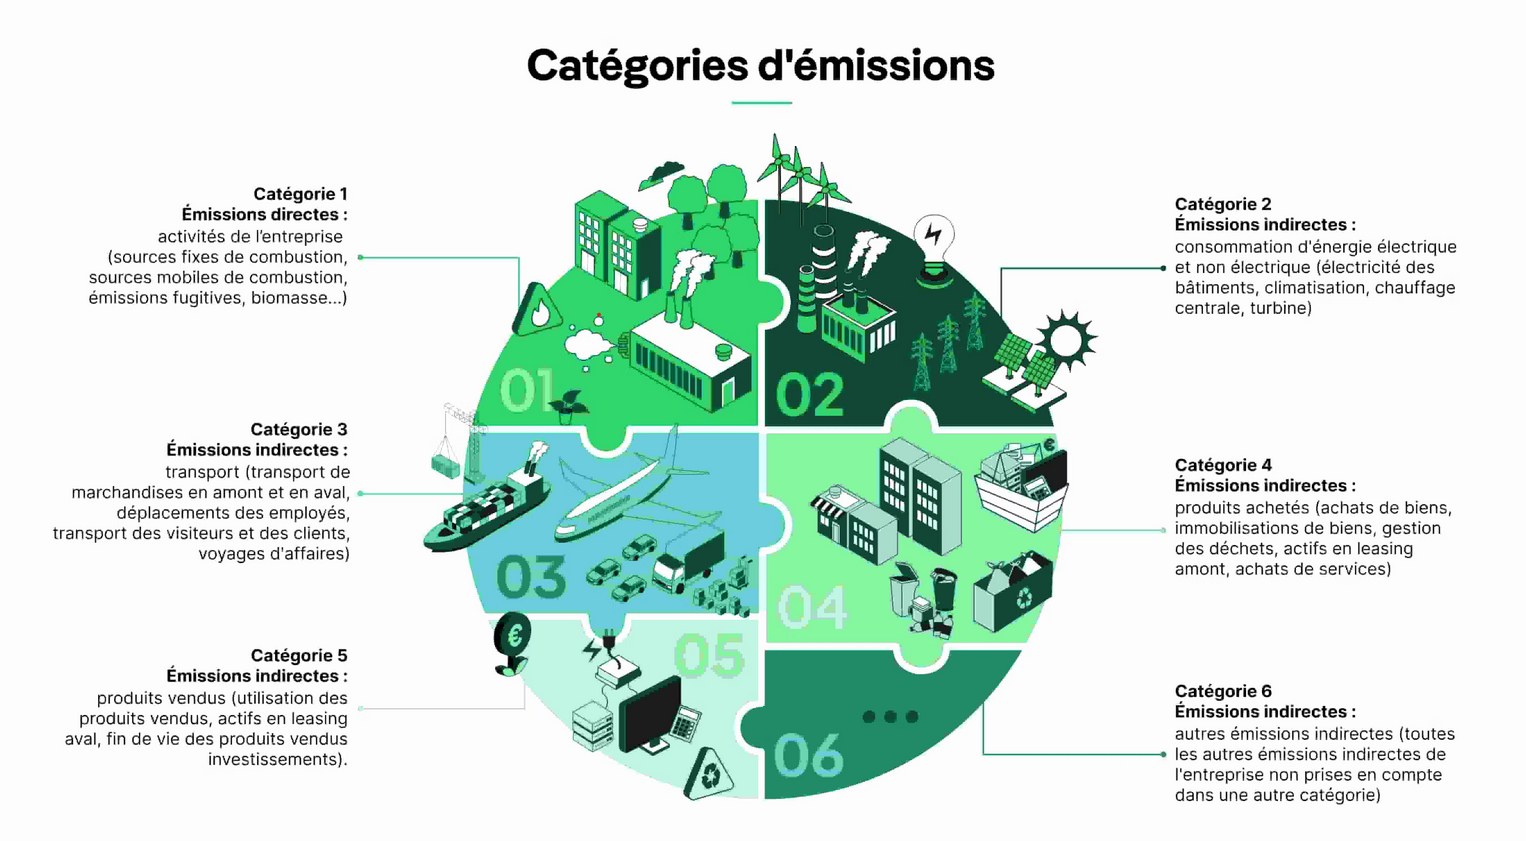 catégories d'émissions prises en compte dans le bilan carbone